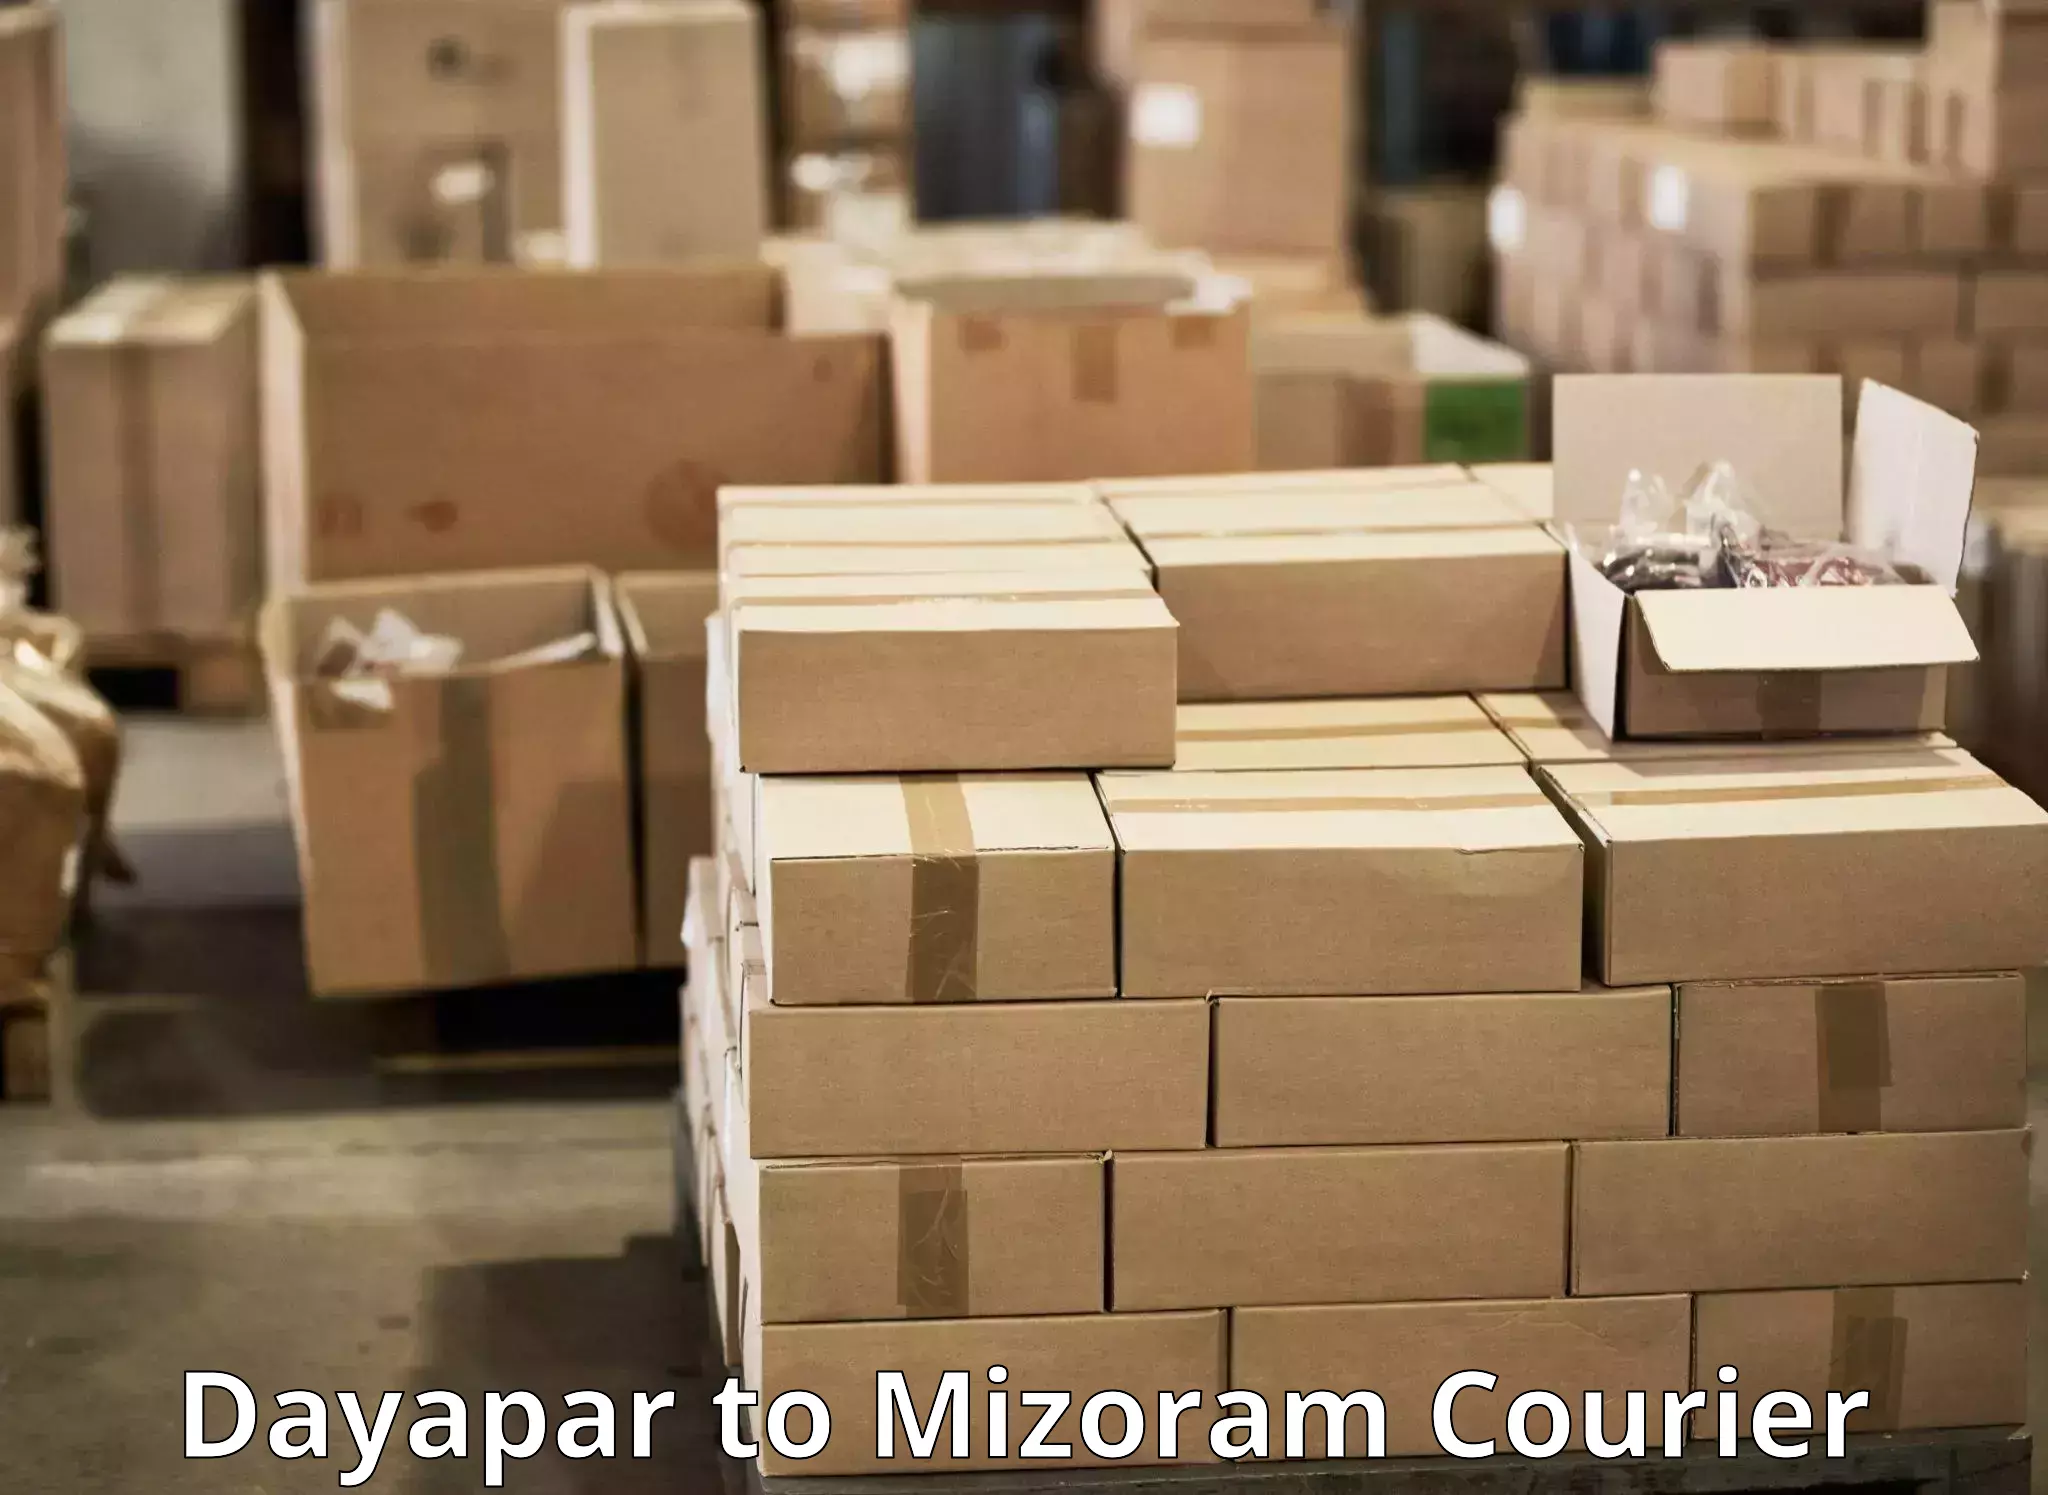 Special handling courier Dayapar to Mizoram